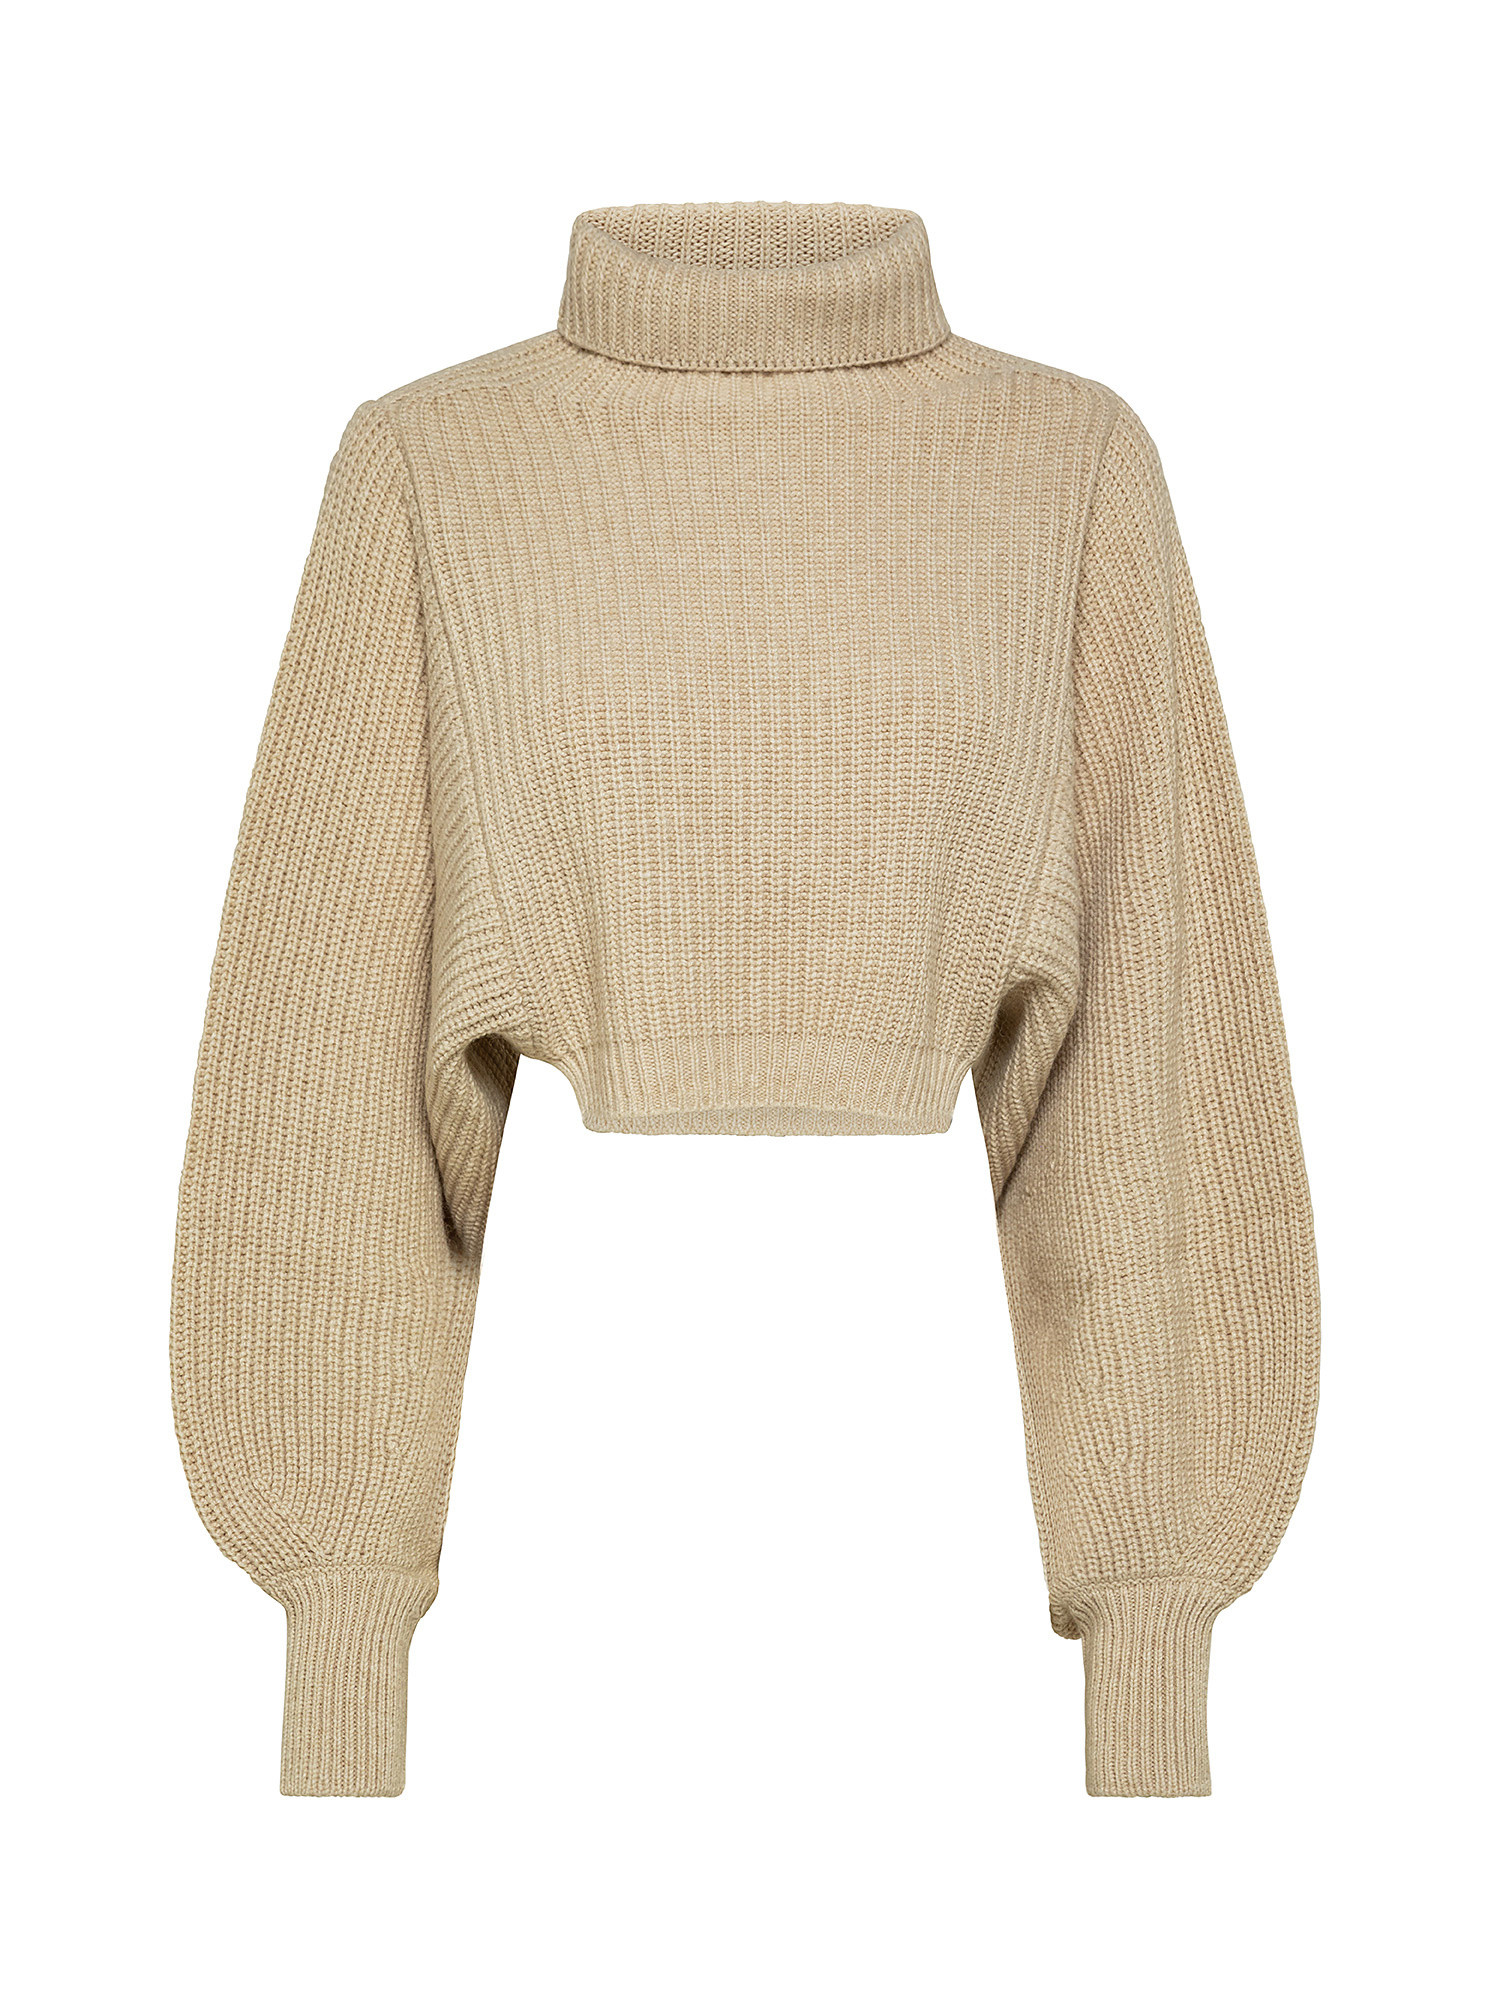 Укороченный свитер оверсайз из смесовой шерсти в рубчик. Attic And Barn, бежевый